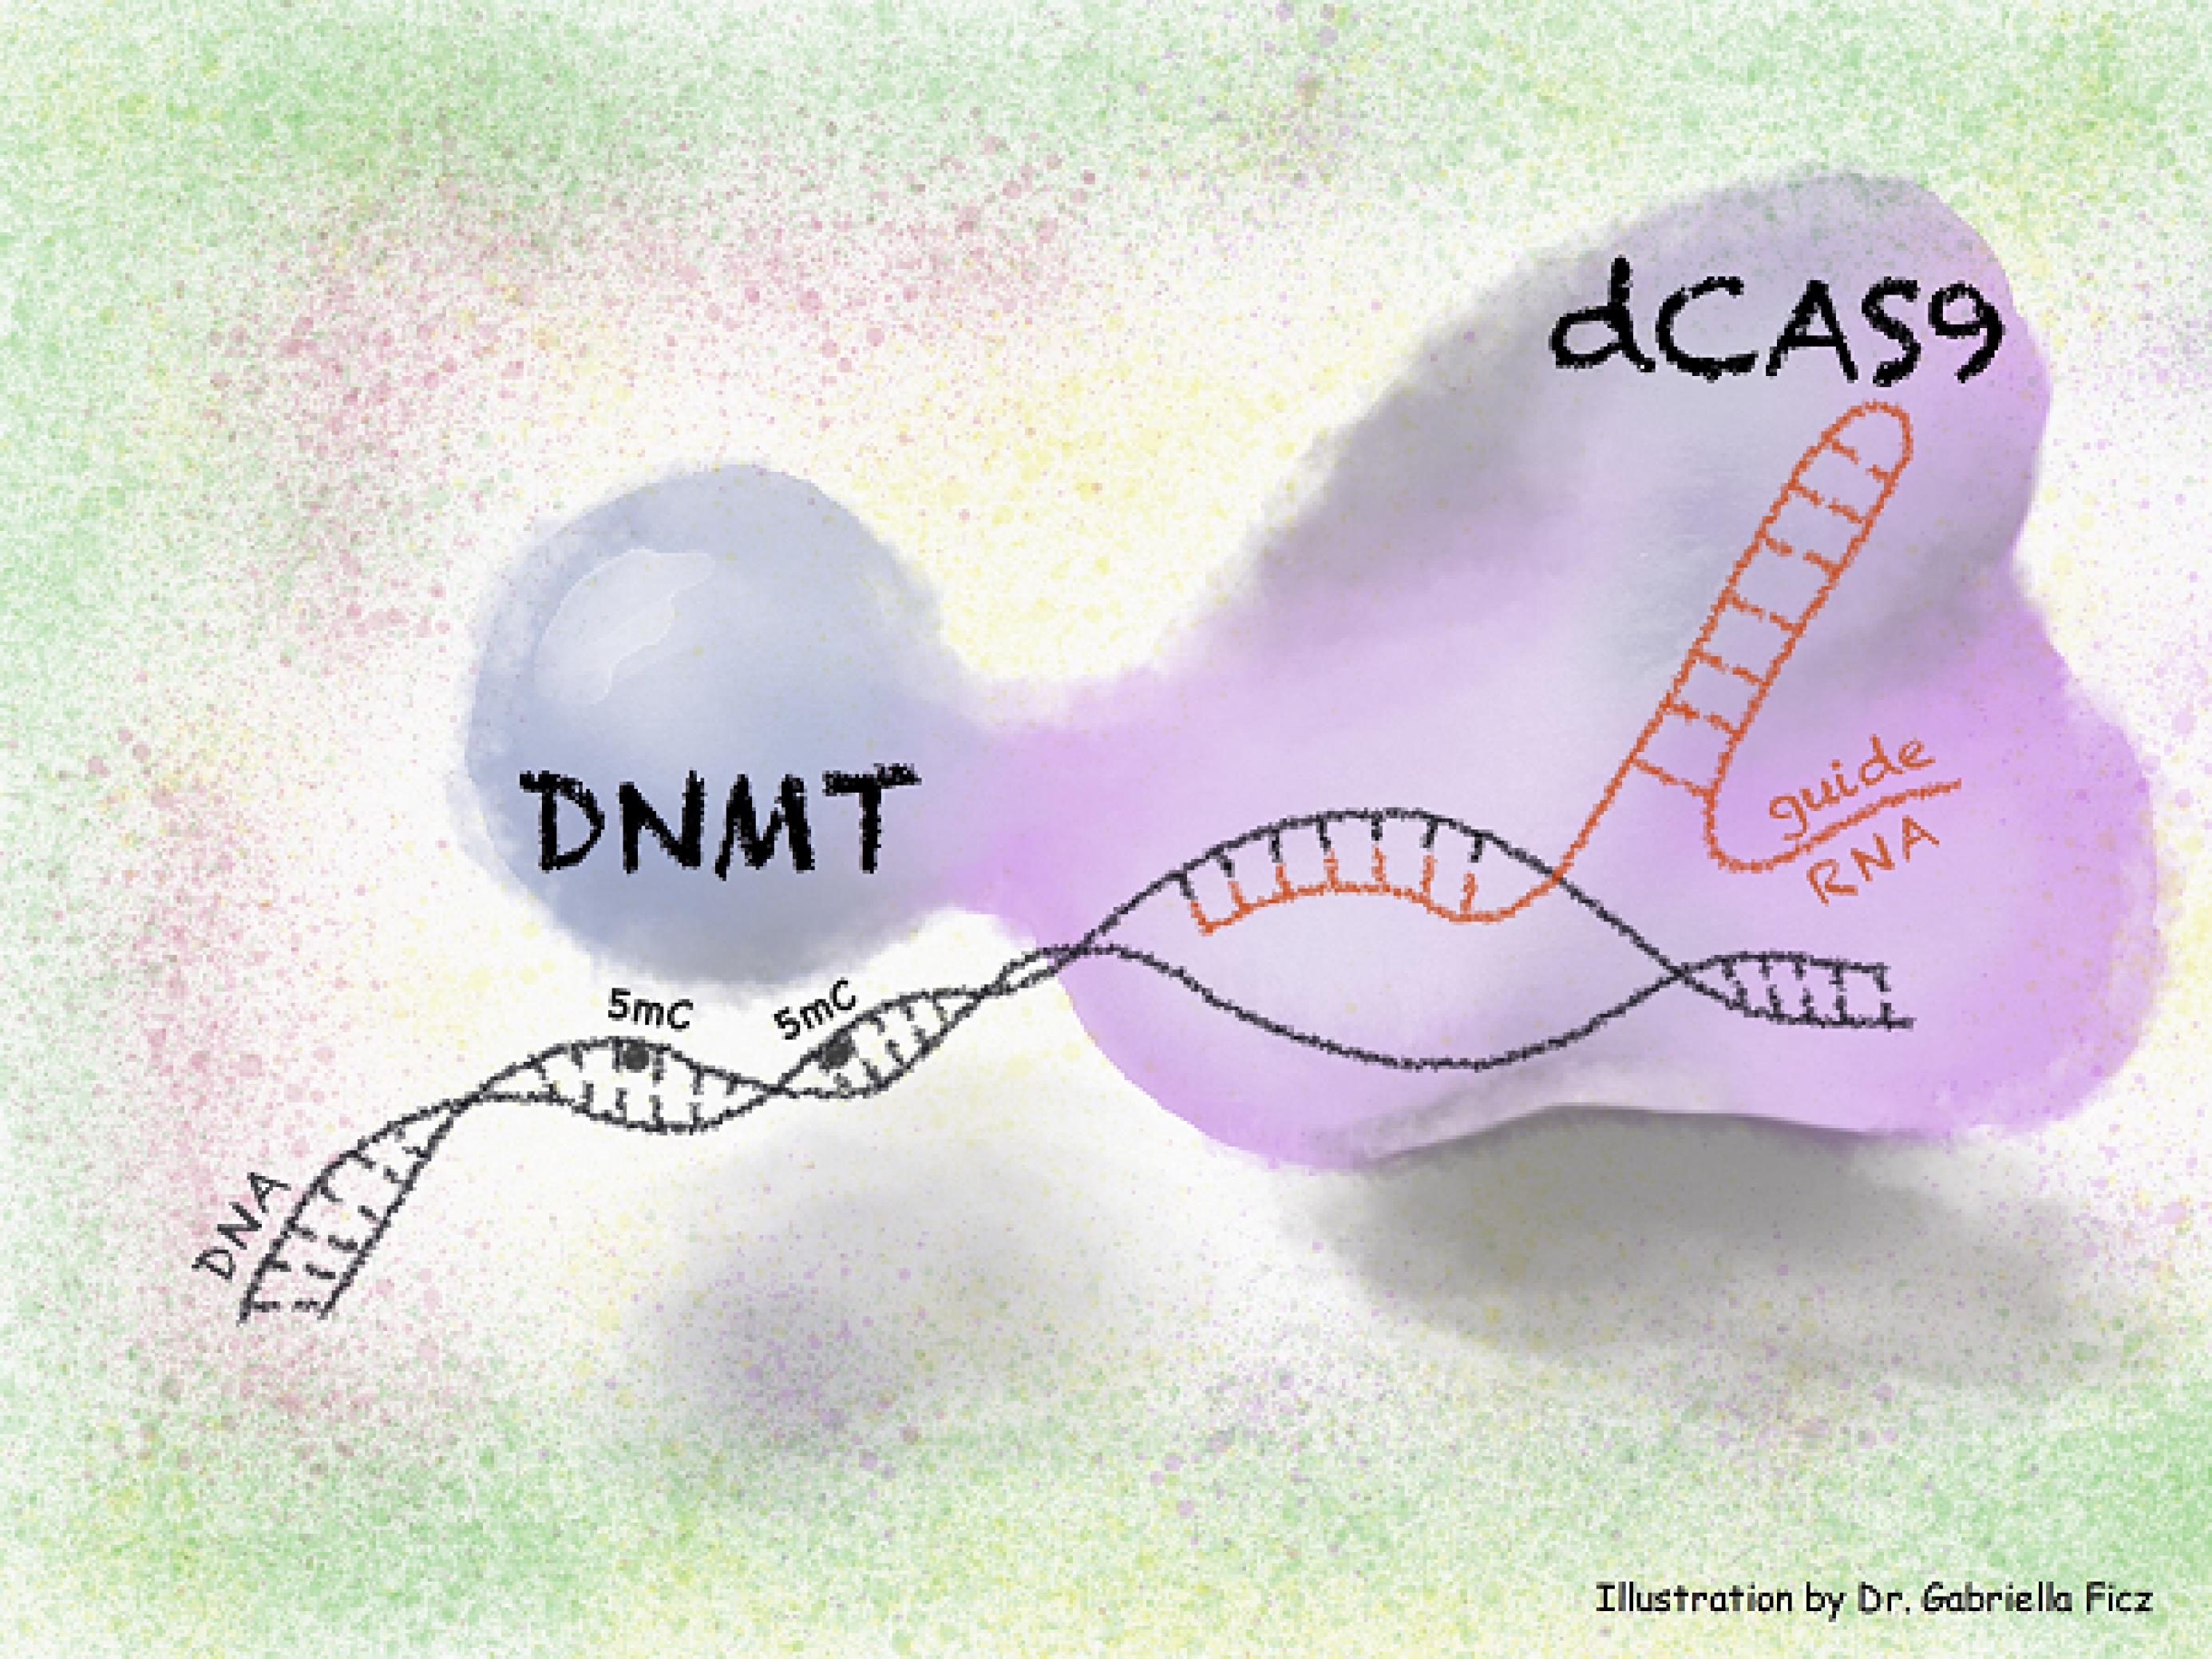 Grafik eines geöffneten DNA-Strangs, an den zwei Enzyme gebunden haben. Eines namens dCAS9 und eines namens DNMT.